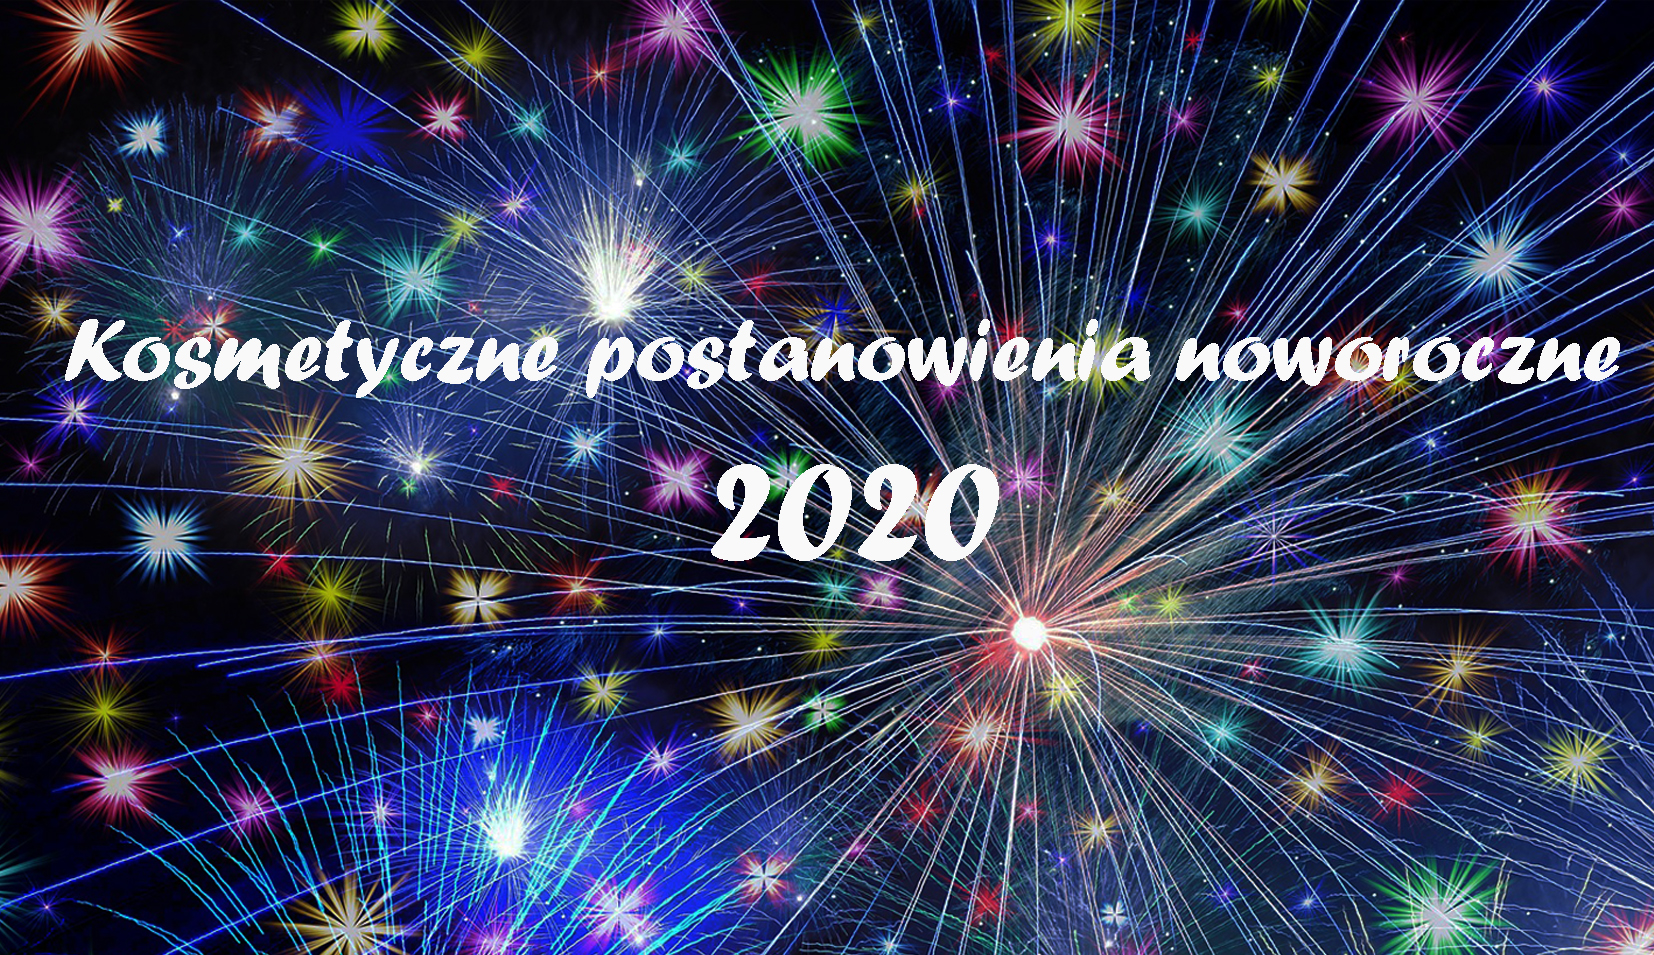 Kosmetyczne postanowienia noworoczne 2020